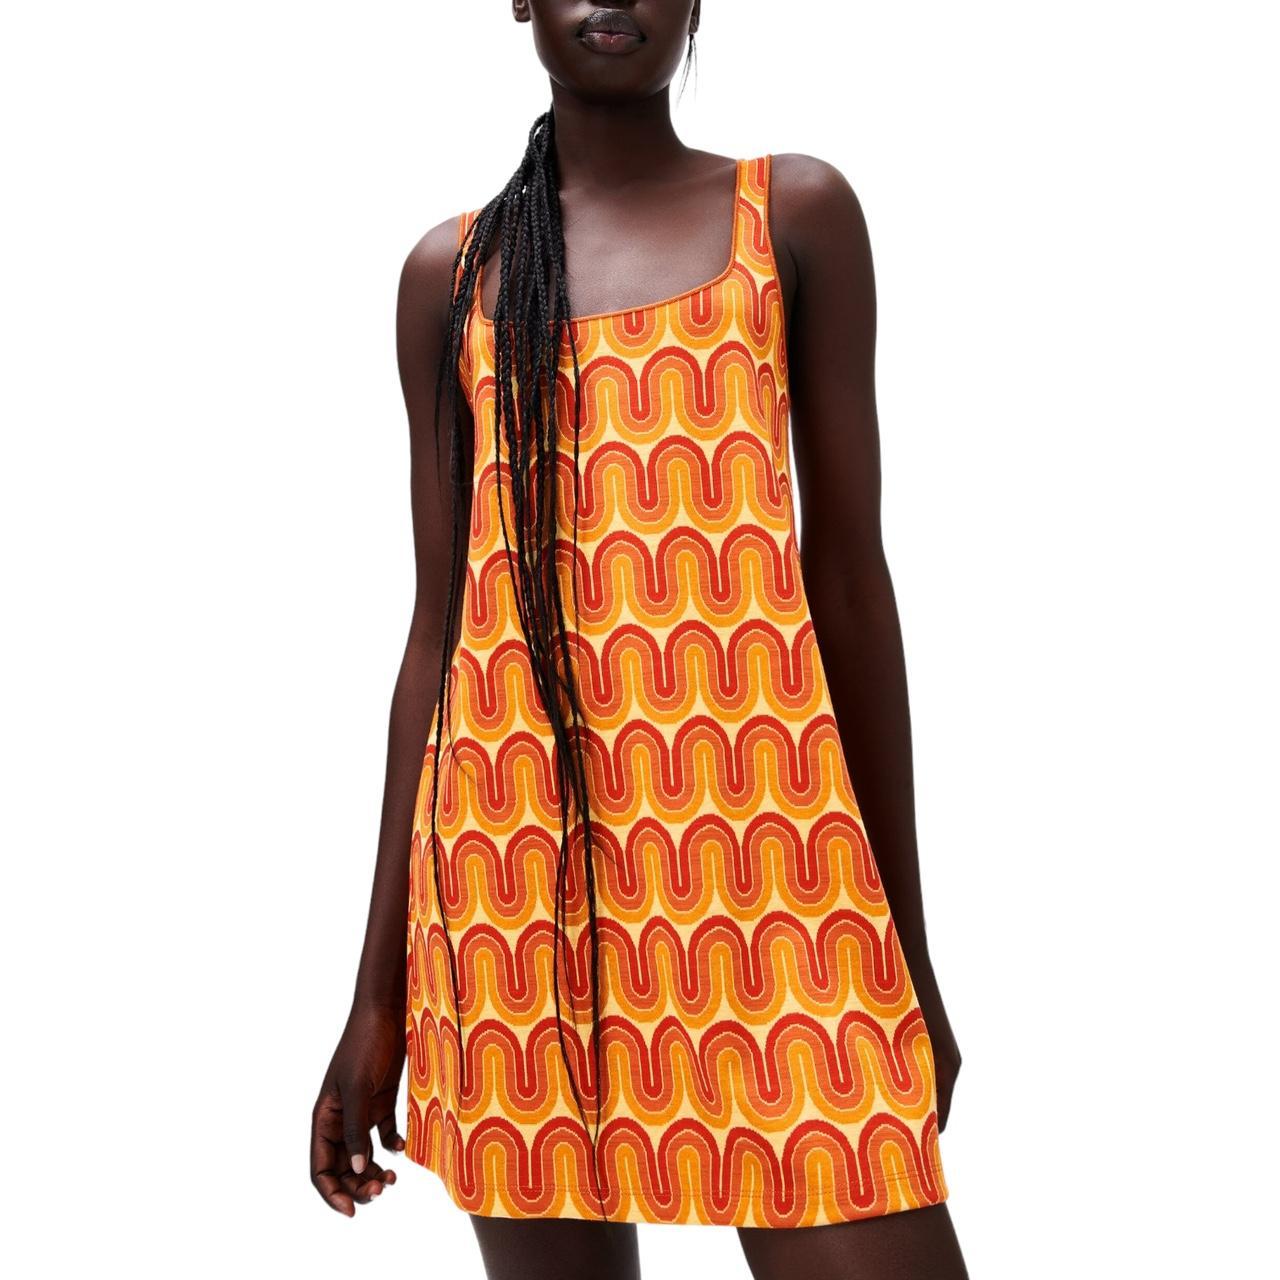 ZARA Geometric Print Knit Mini Dress Size Small on - Depop